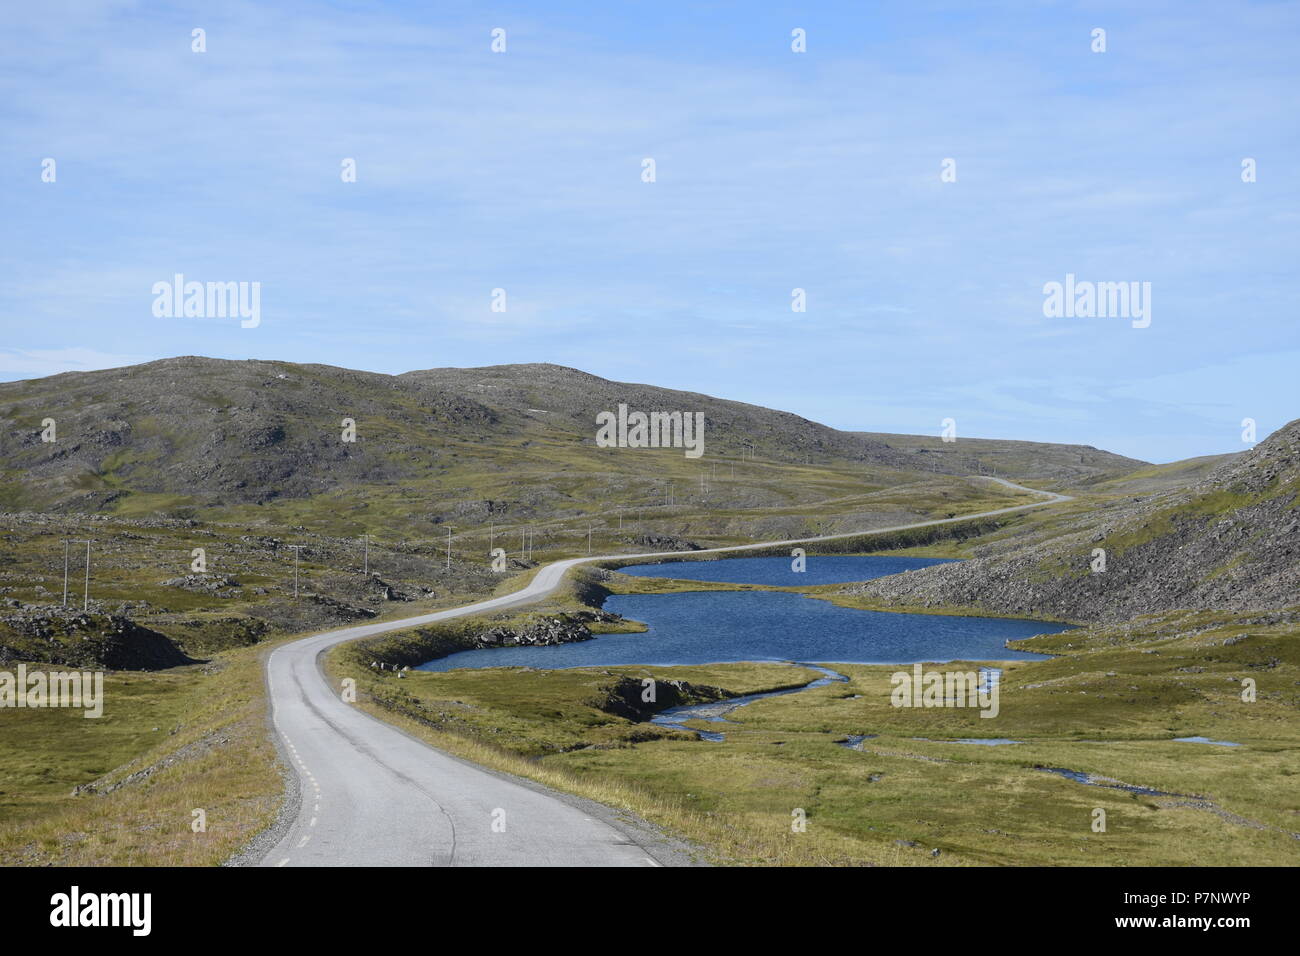 Norwegen, Nordkap, Nordkapp, Straße, Gjesvaer, Magerøya, Magerøy, Honningsvåg, E69, E 69, Tundra, Insel, vedere, Tümpel, Moor, Landstraße, Fv 8038, 8038, Foto Stock